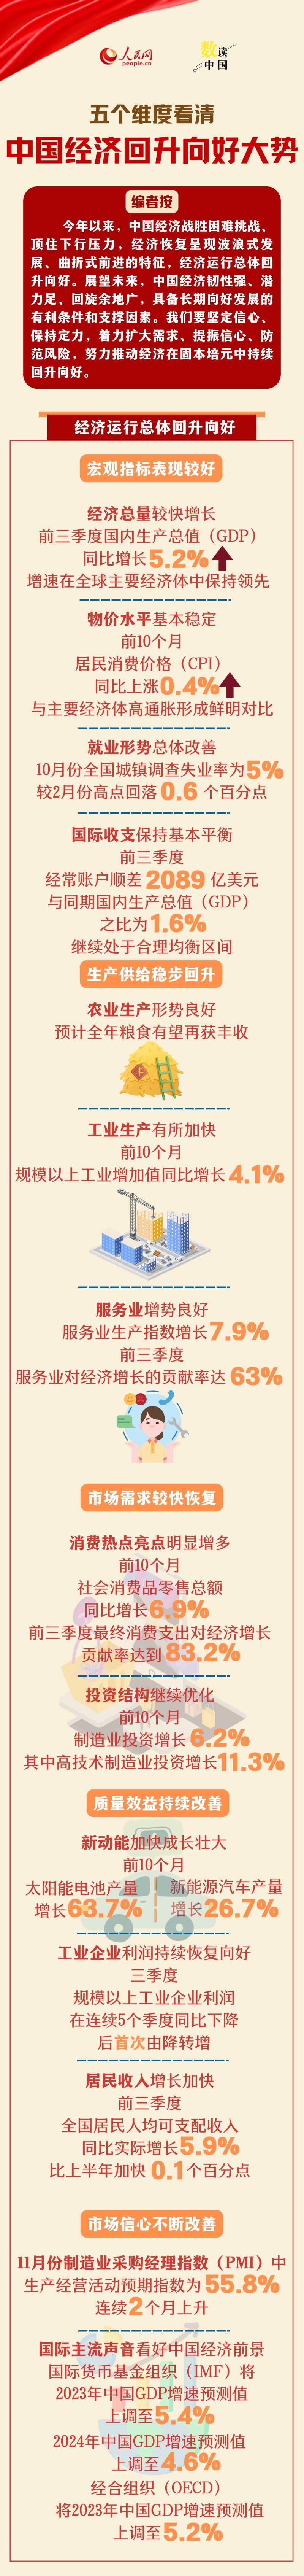 数读中国 | 五个维度看清中国经济回升向好大势